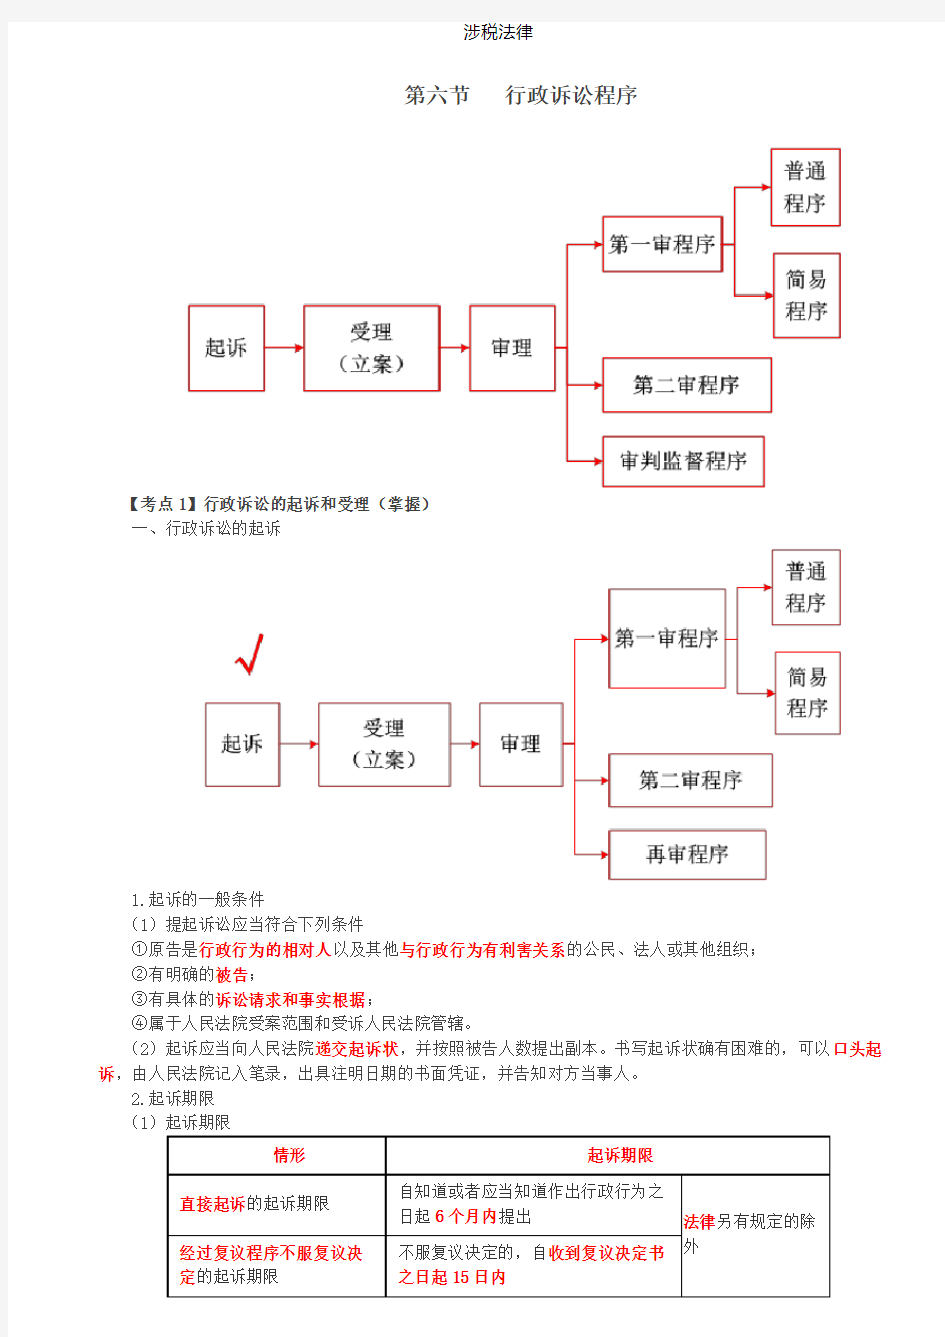 税务师涉税法律讲义Ⅰ第32讲_行政诉讼程序(1)